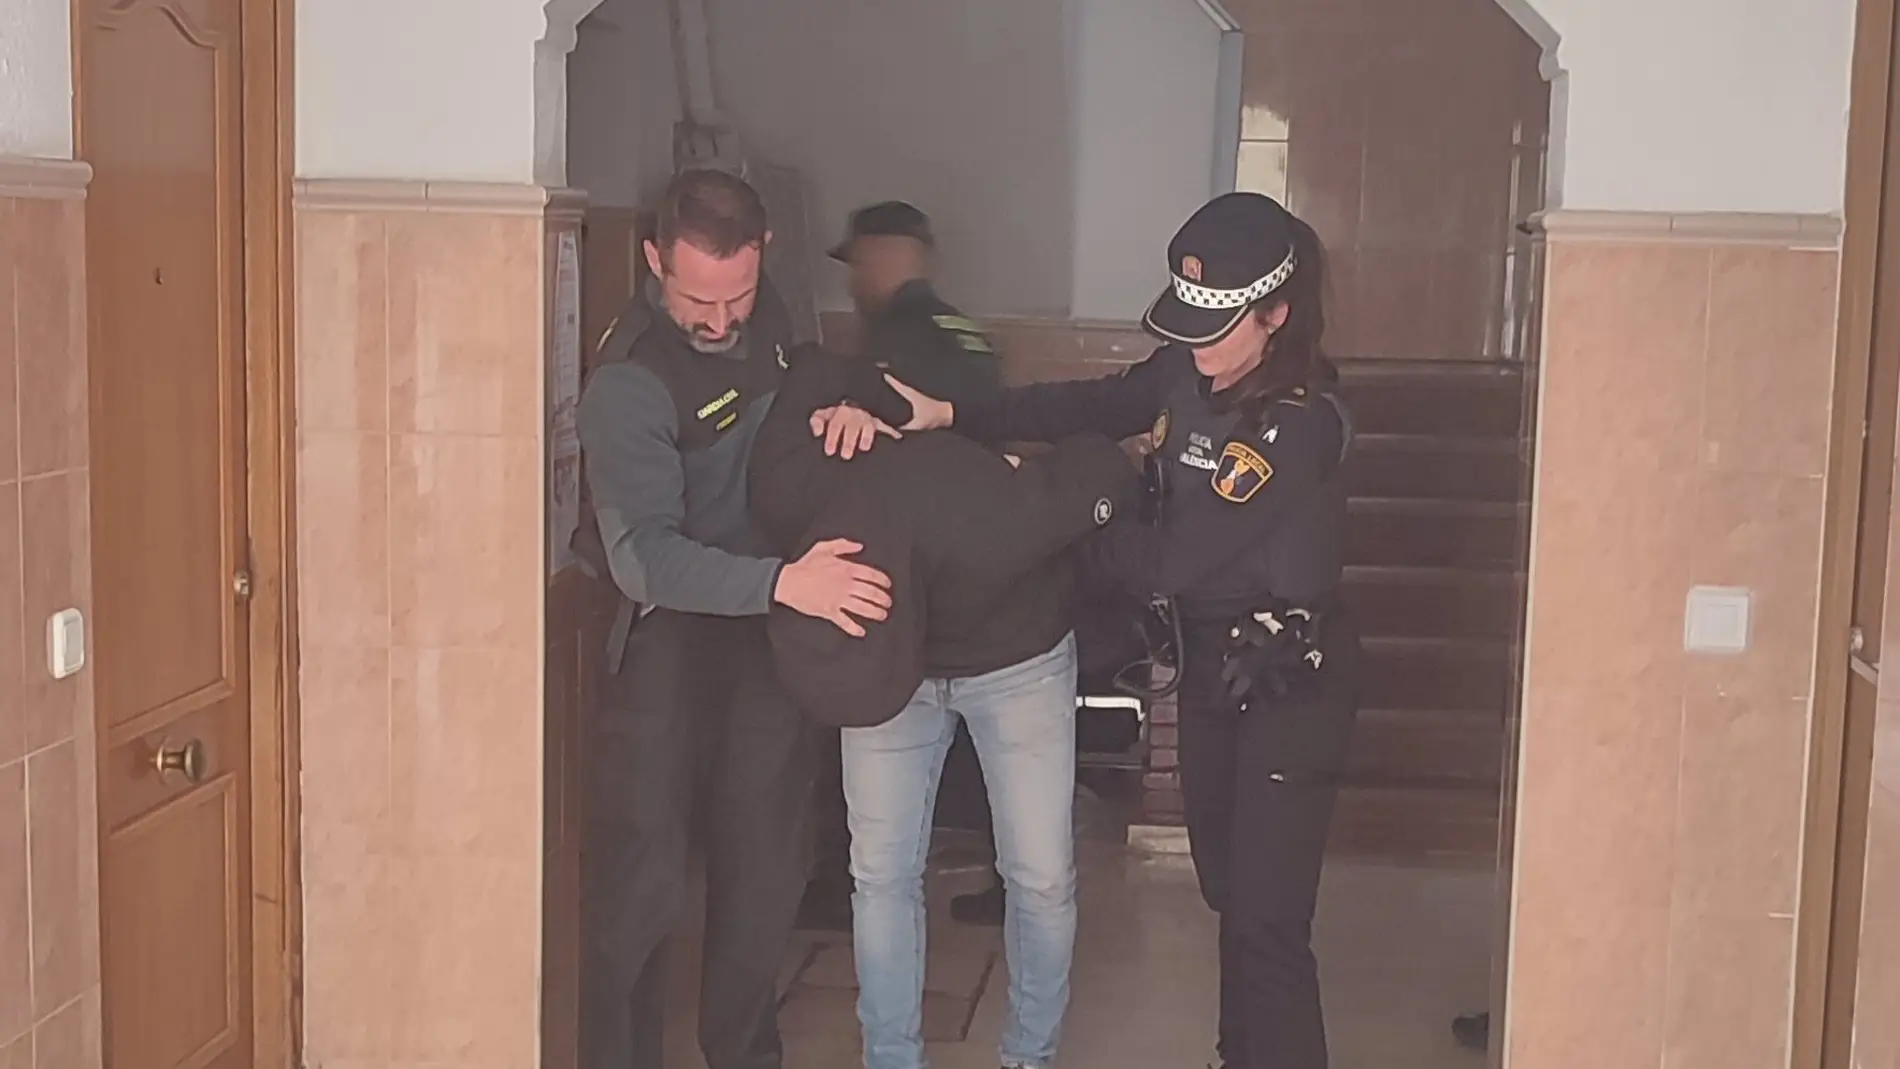 El joven detenido es sacado de la vivienda por los agentes